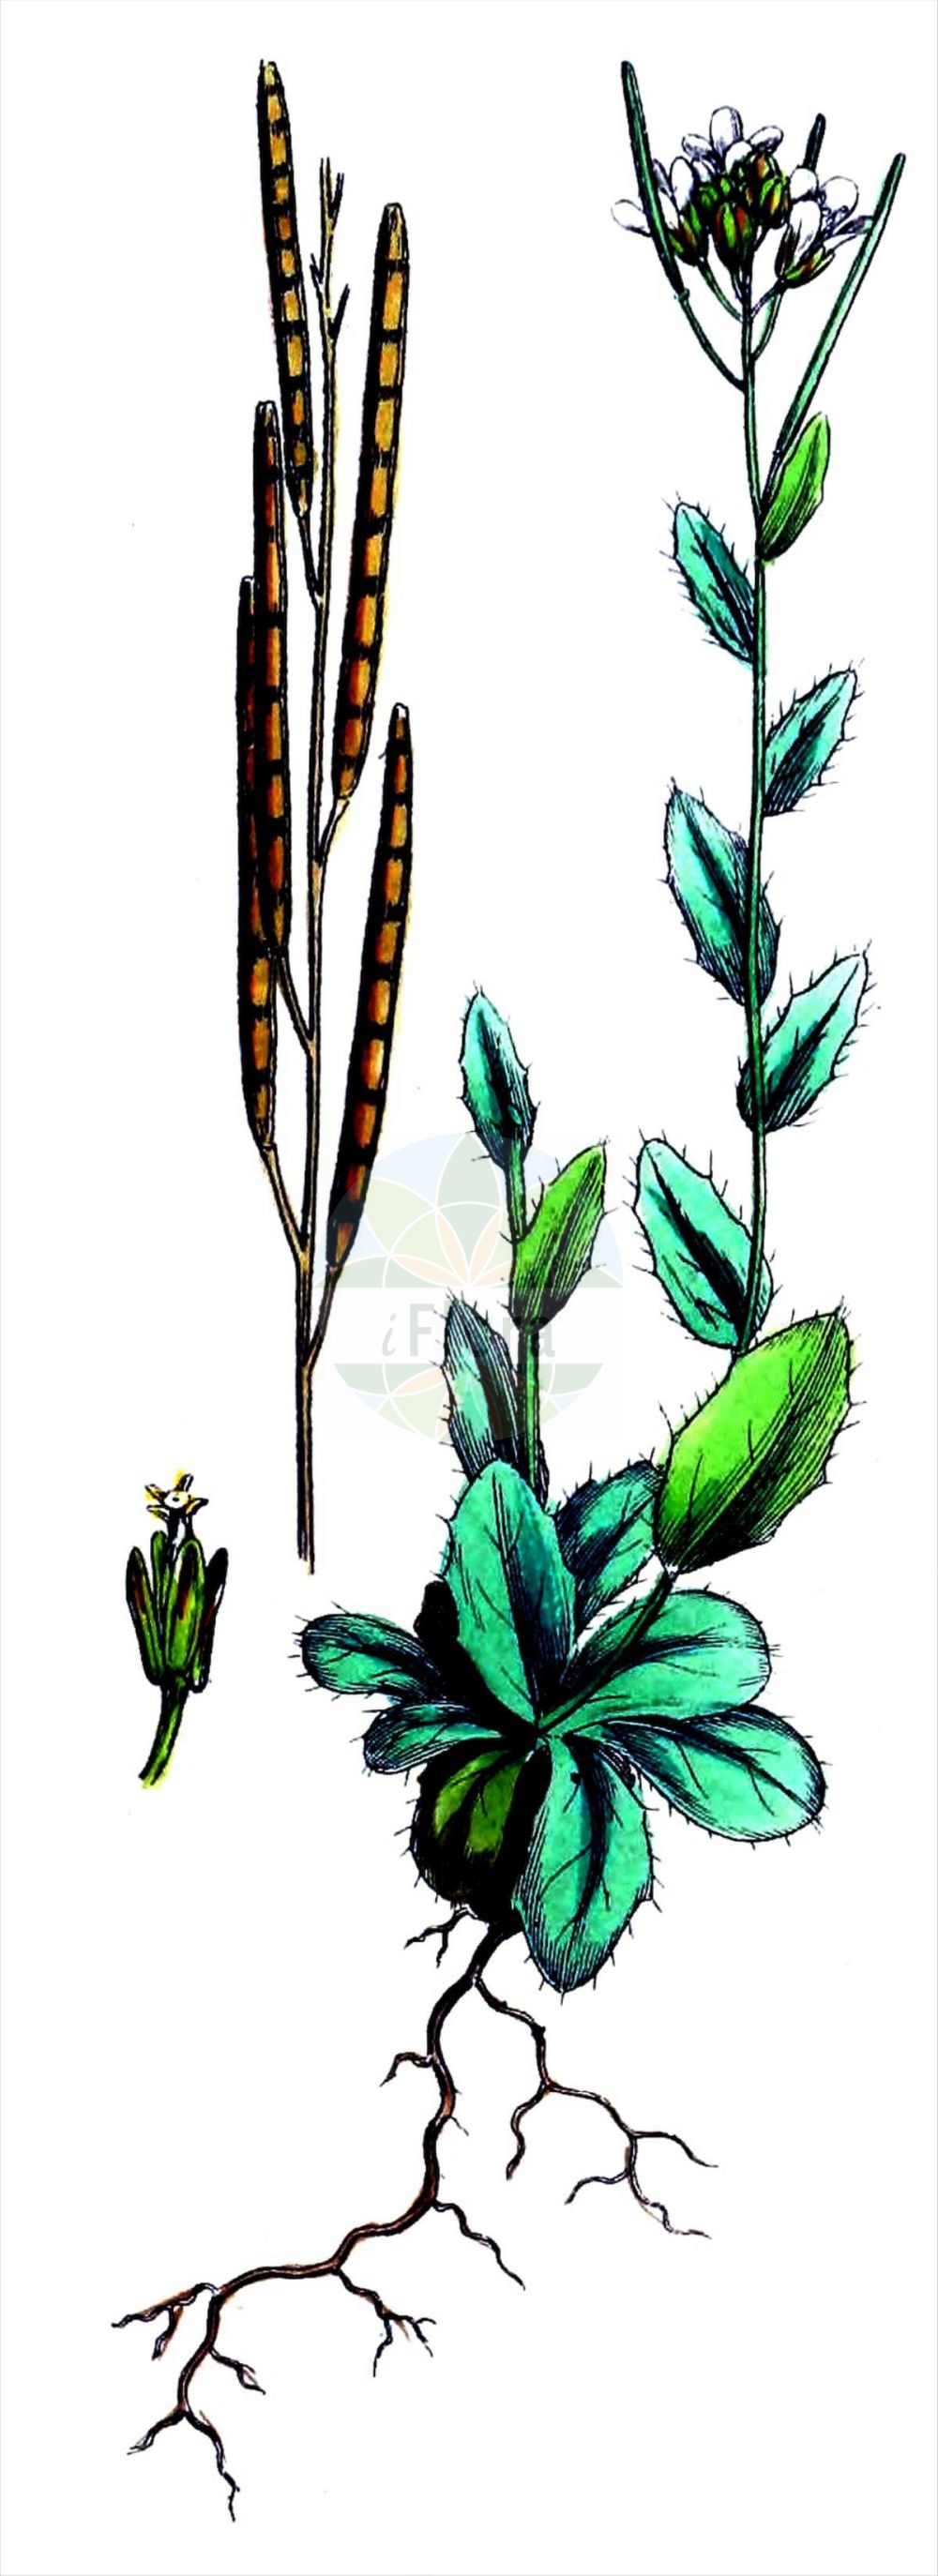 Historische Abbildung von Arabis ciliata (Doldige Gänsekresse - Corymbose Rockcress). Das Bild zeigt Blatt, Bluete, Frucht und Same. ---- Historical Drawing of Arabis ciliata (Doldige Gänsekresse - Corymbose Rockcress). The image is showing leaf, flower, fruit and seed.(Arabis ciliata,Doldige Gänsekresse,Corymbose Rockcress,Arabis arcuata,Arabis ciliata,Arabis corymbiflora,Dollineria ciliata,Doldige Gaensekresse,Corymbose Rockcress,Arabis,Gänsekresse,Rockcress,Brassicaceae,Kreuzblütler,Cabbage family,Blatt,Bluete,Frucht,Same,leaf,flower,fruit,seed,Sowerby (1790-1813))